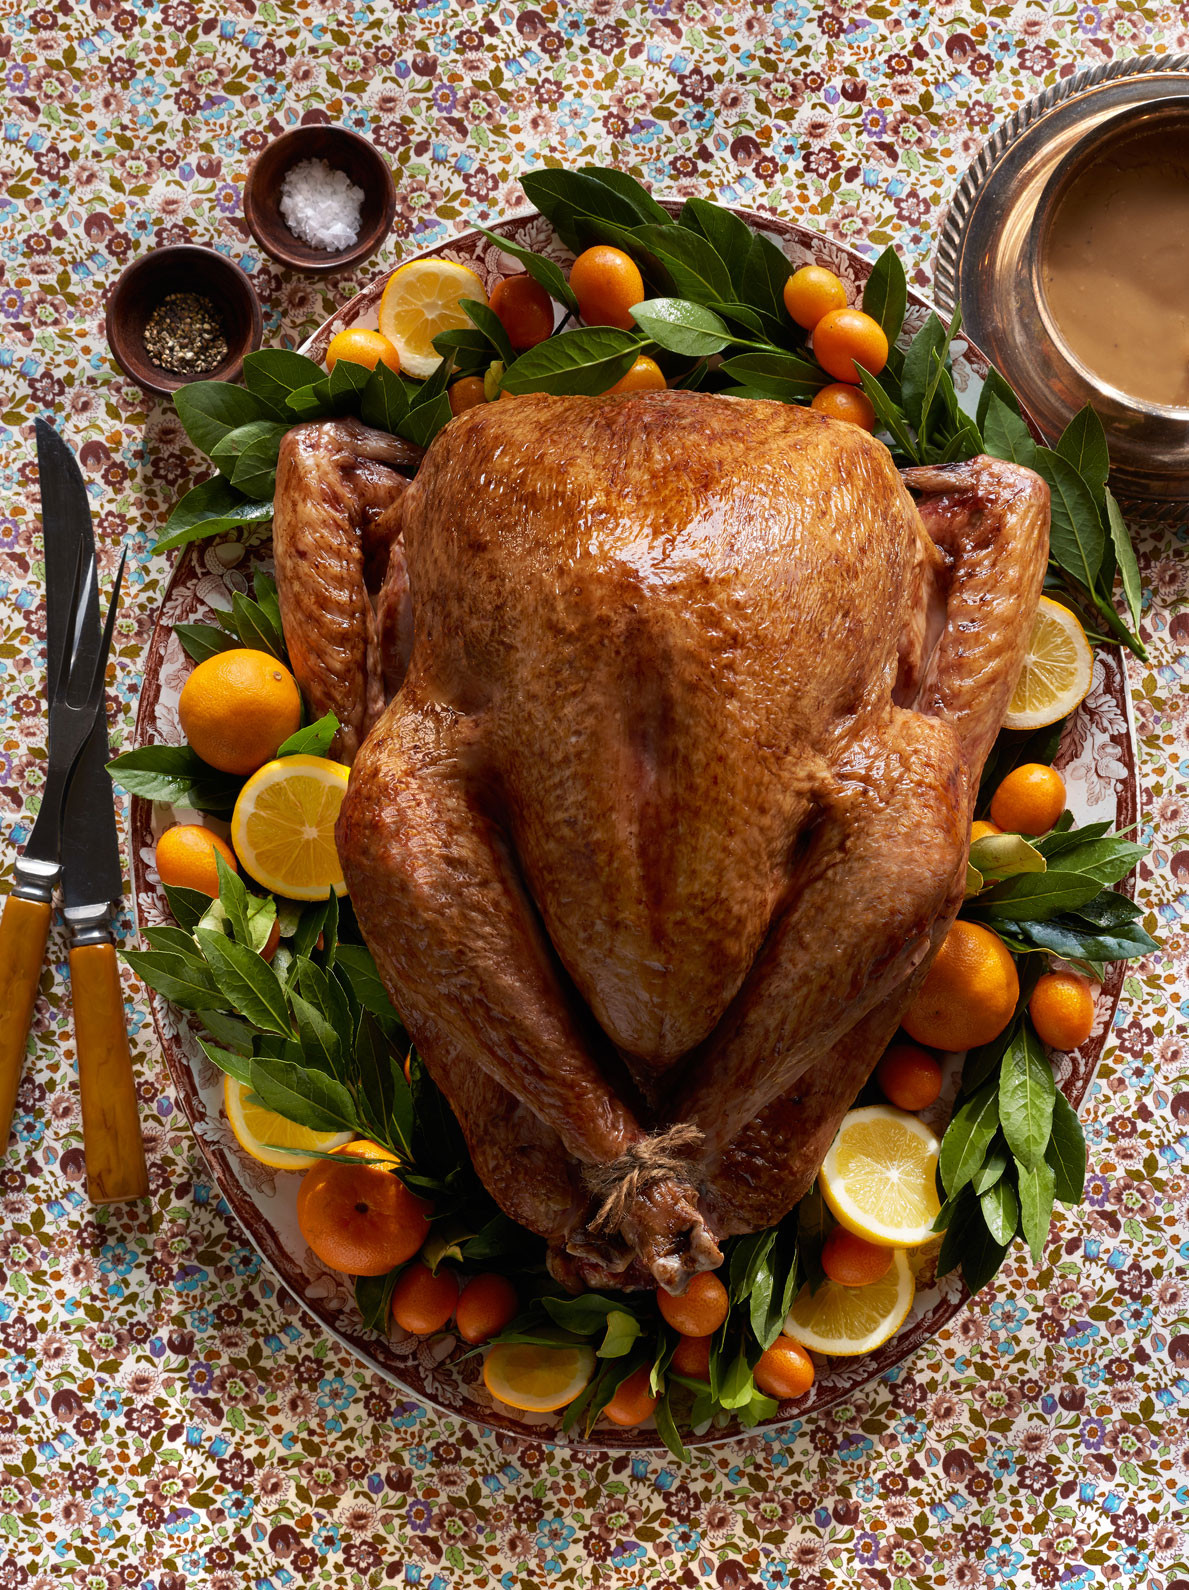 Best Thanksgiving Turkey Ever
 25 Best Thanksgiving Turkey Recipes How To Cook Turkey